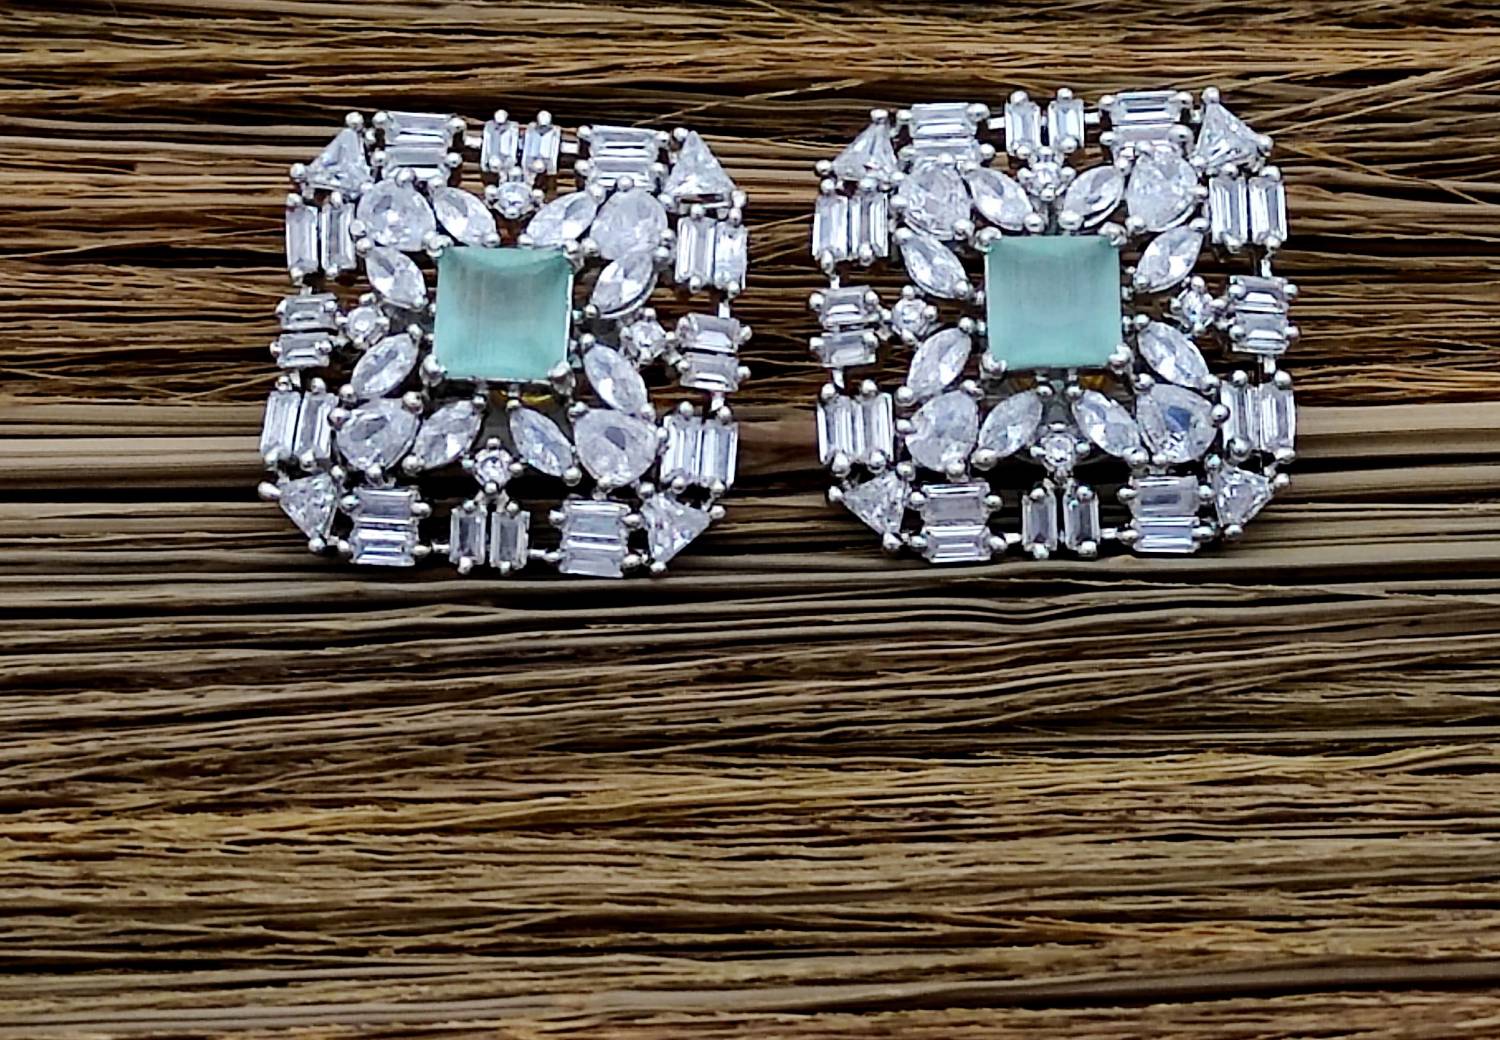 Dangle Silver Ladies American Diamond Earrings at Rs 690/pair in Hyderabad